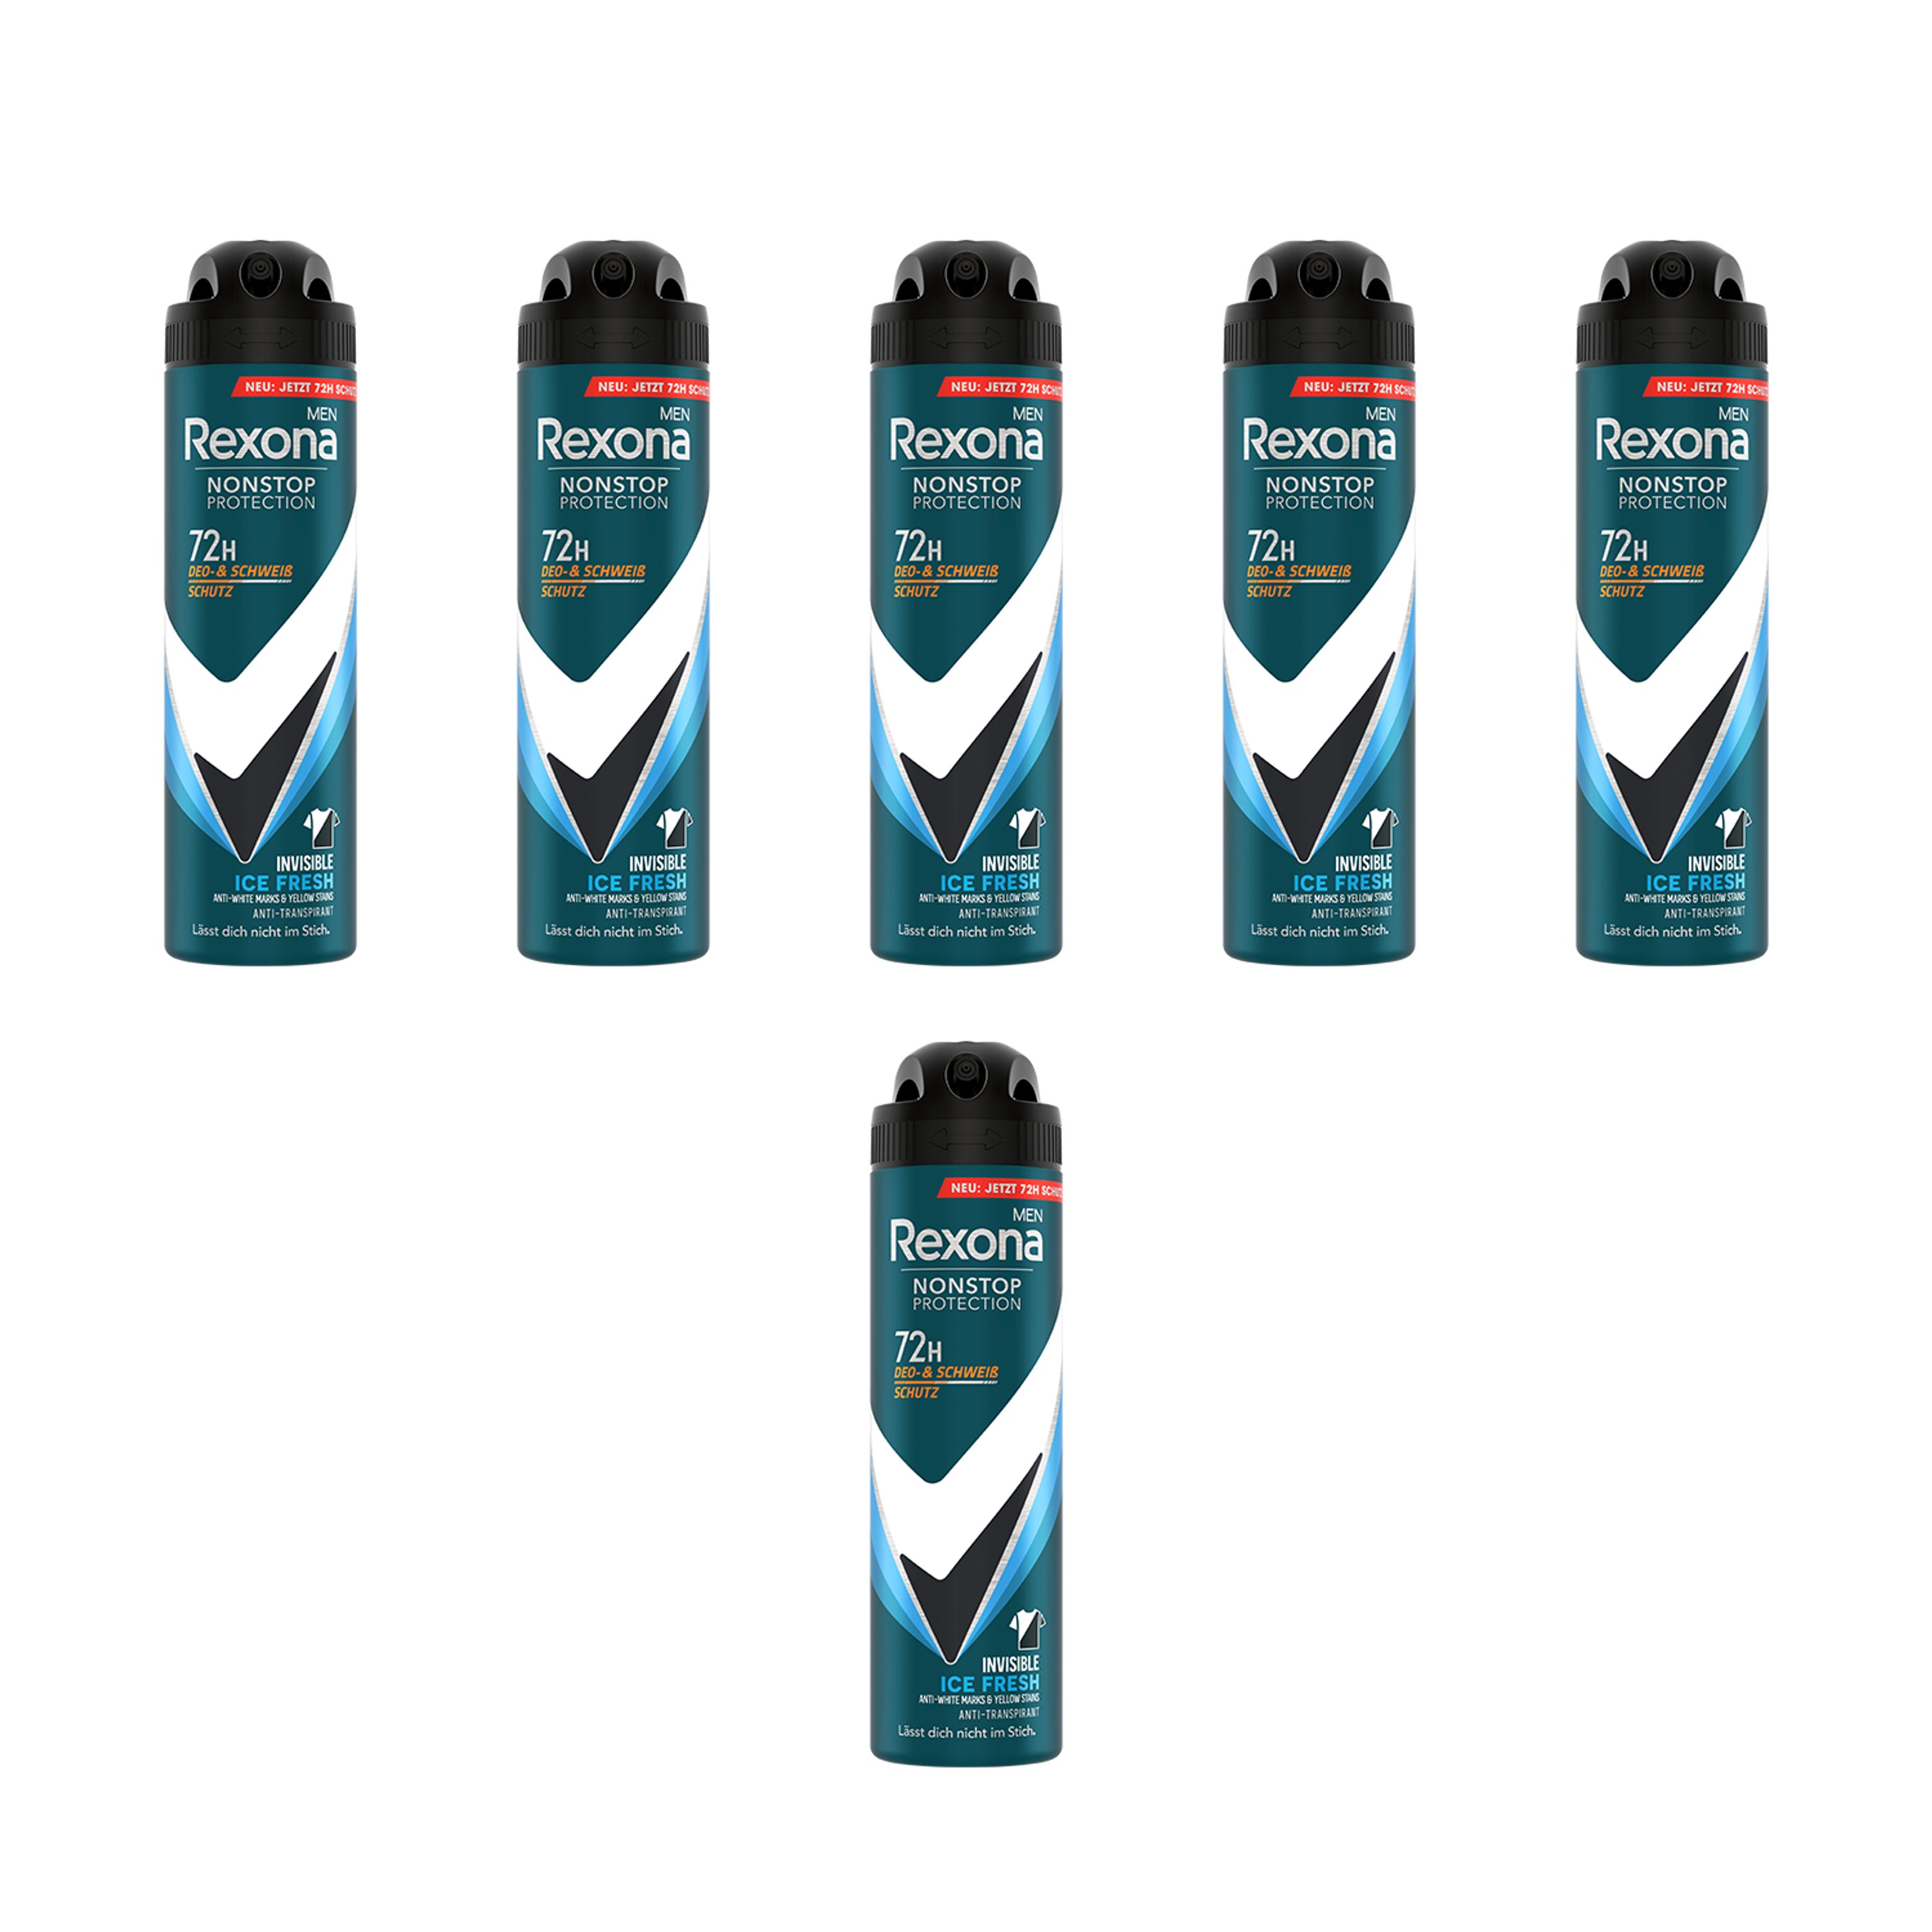 Rexona Deo-Set 6x 150ml Deospray Men Nonstop Protection Invisible Ice Fresh, 72 Stunden Schutz vor Schweiß und Körpergeruch